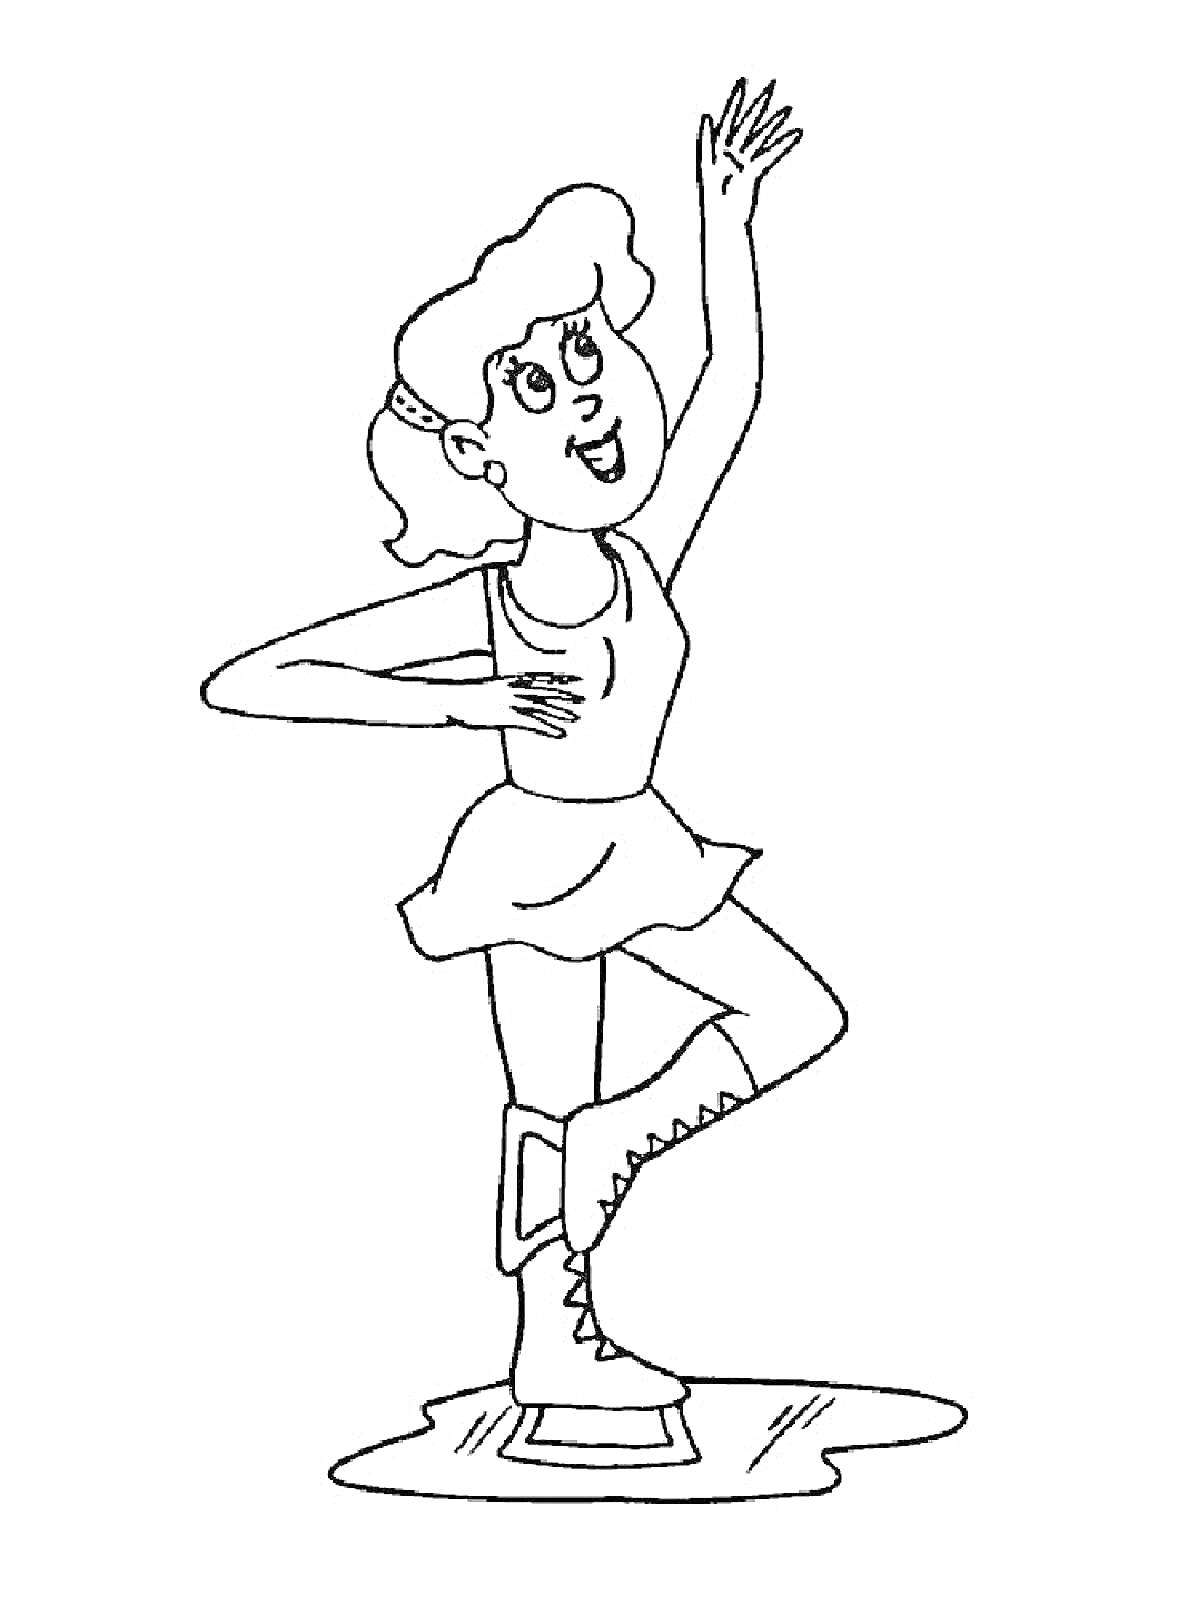 Раскраска Девочка на фигурных коньках в юбочке и спортивной майке стоит на одной ноге, поднимая другую ногу и руку